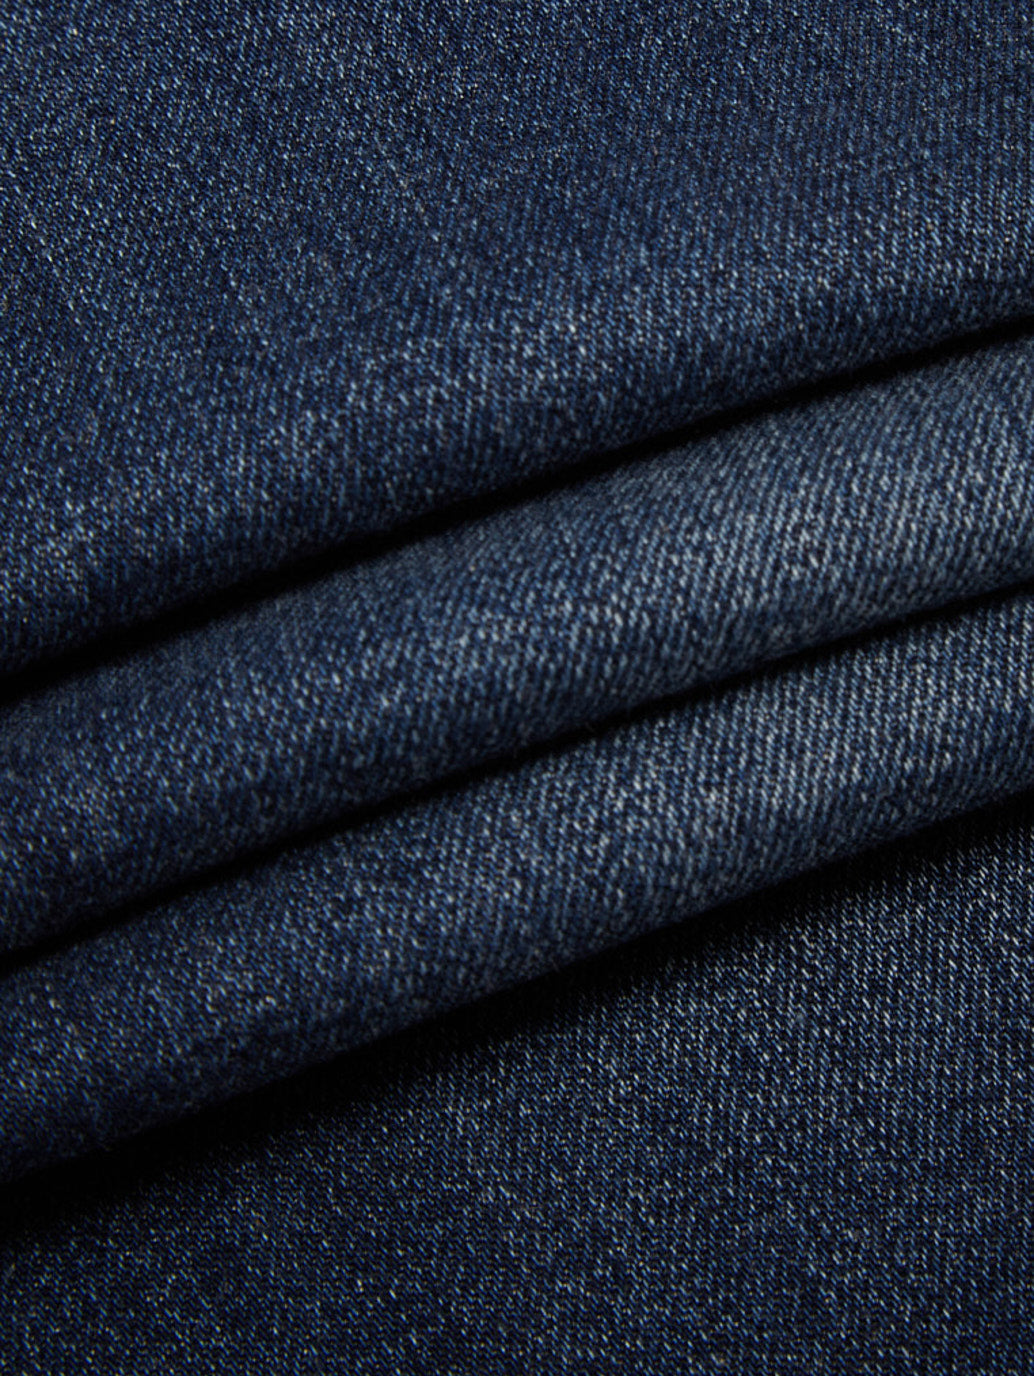 Men's 501 Original Blue Jeans